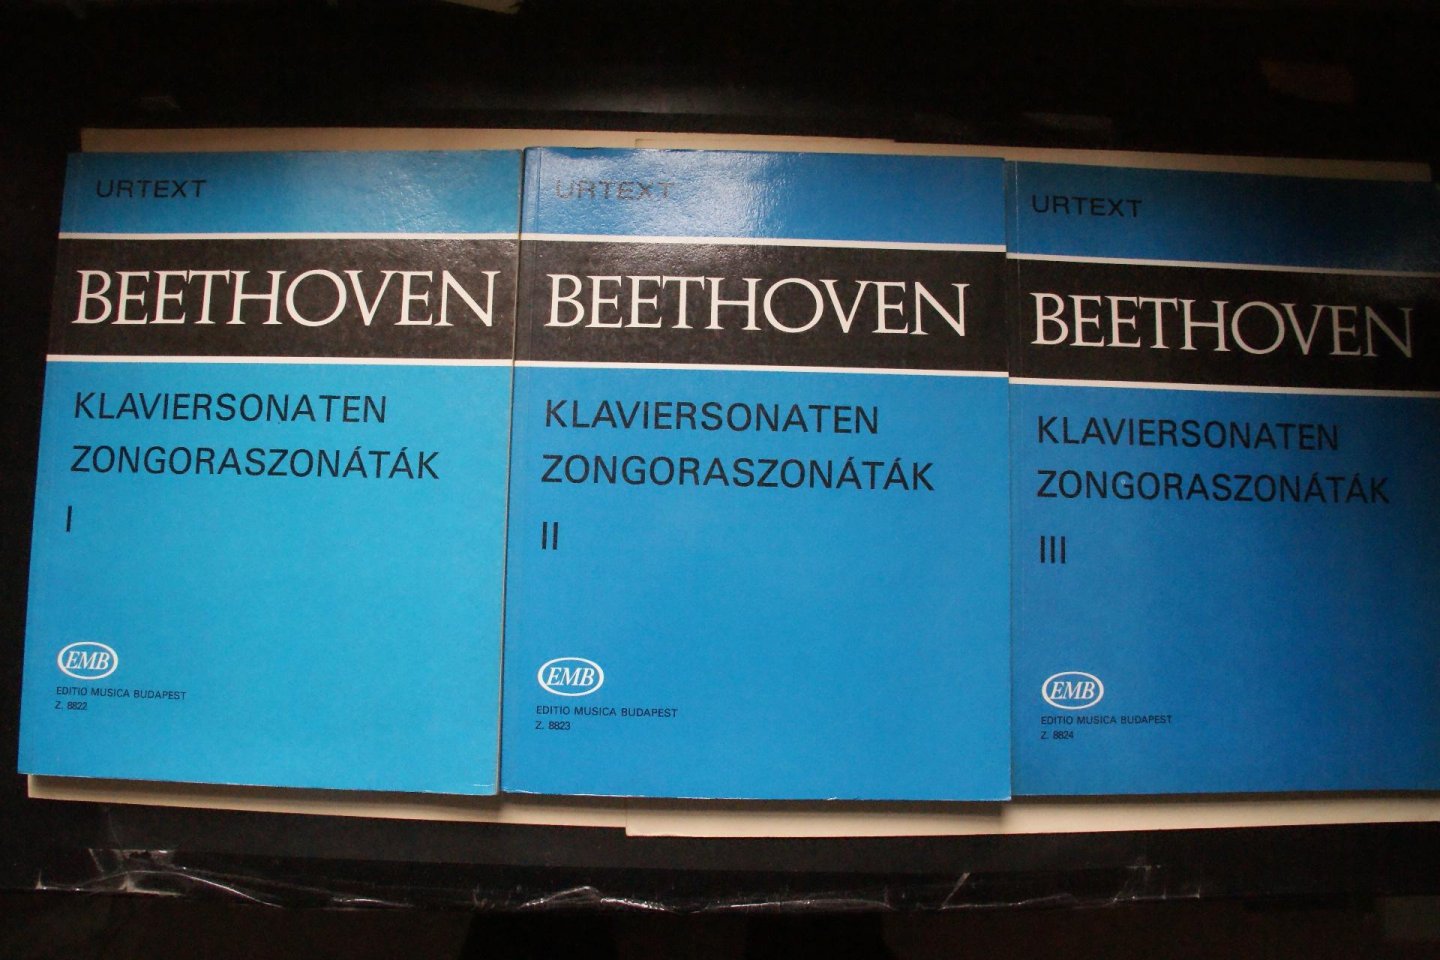 Beethoven, Ludwig van - Compleet in 3 delen: Urtext   Klaviersonaten  Zongoraszonatak